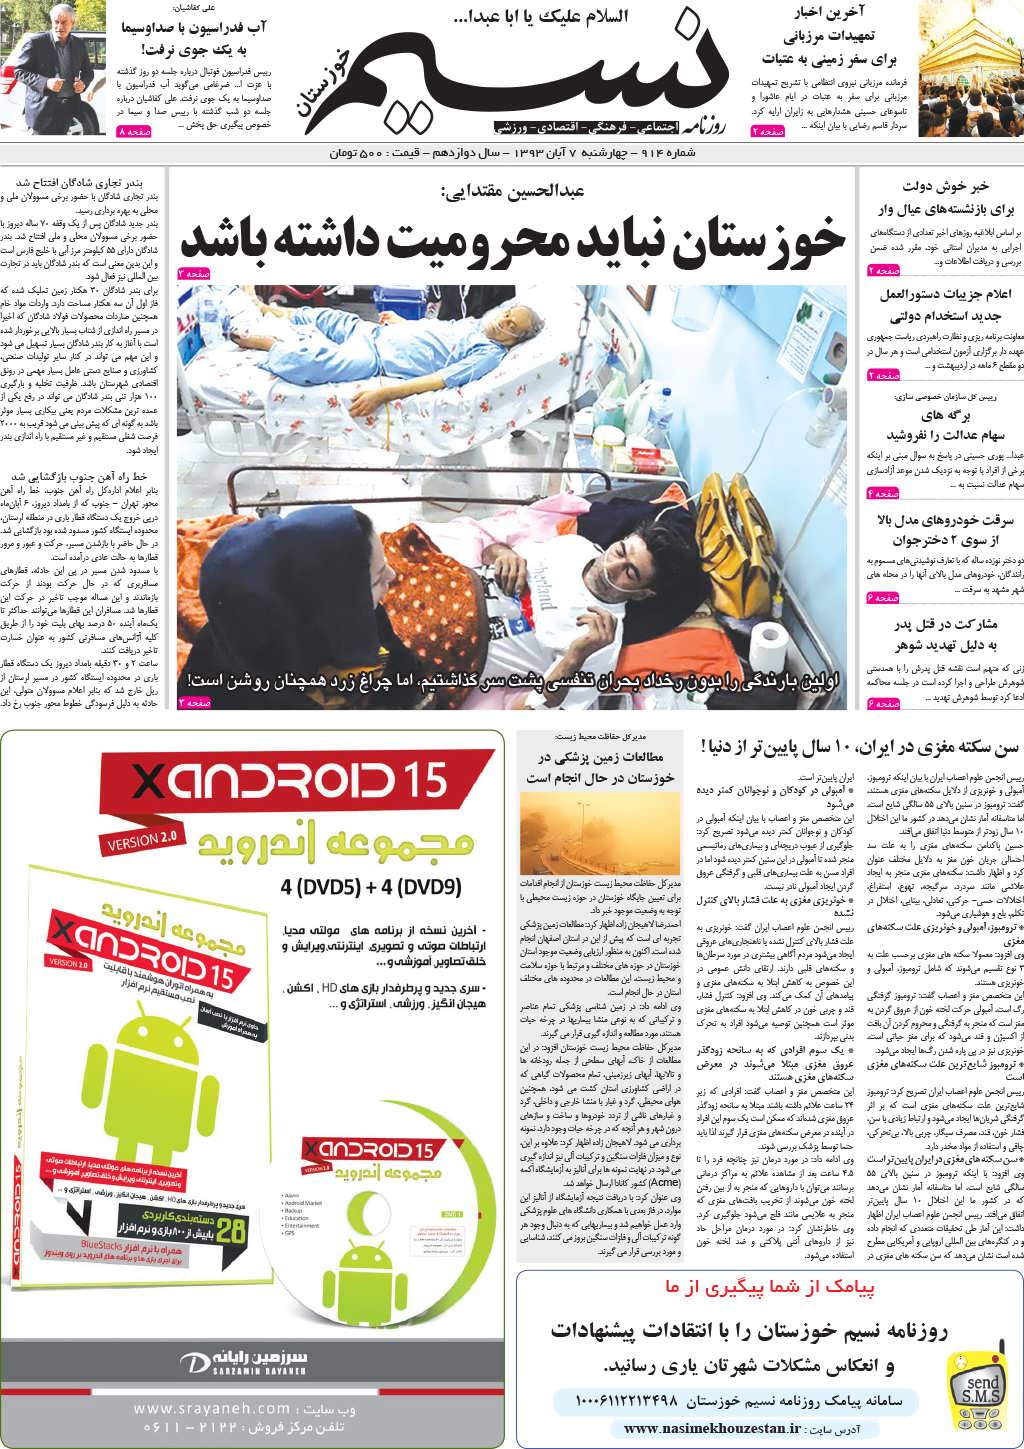 صفحه اصلی روزنامه نسیم شماره 914 